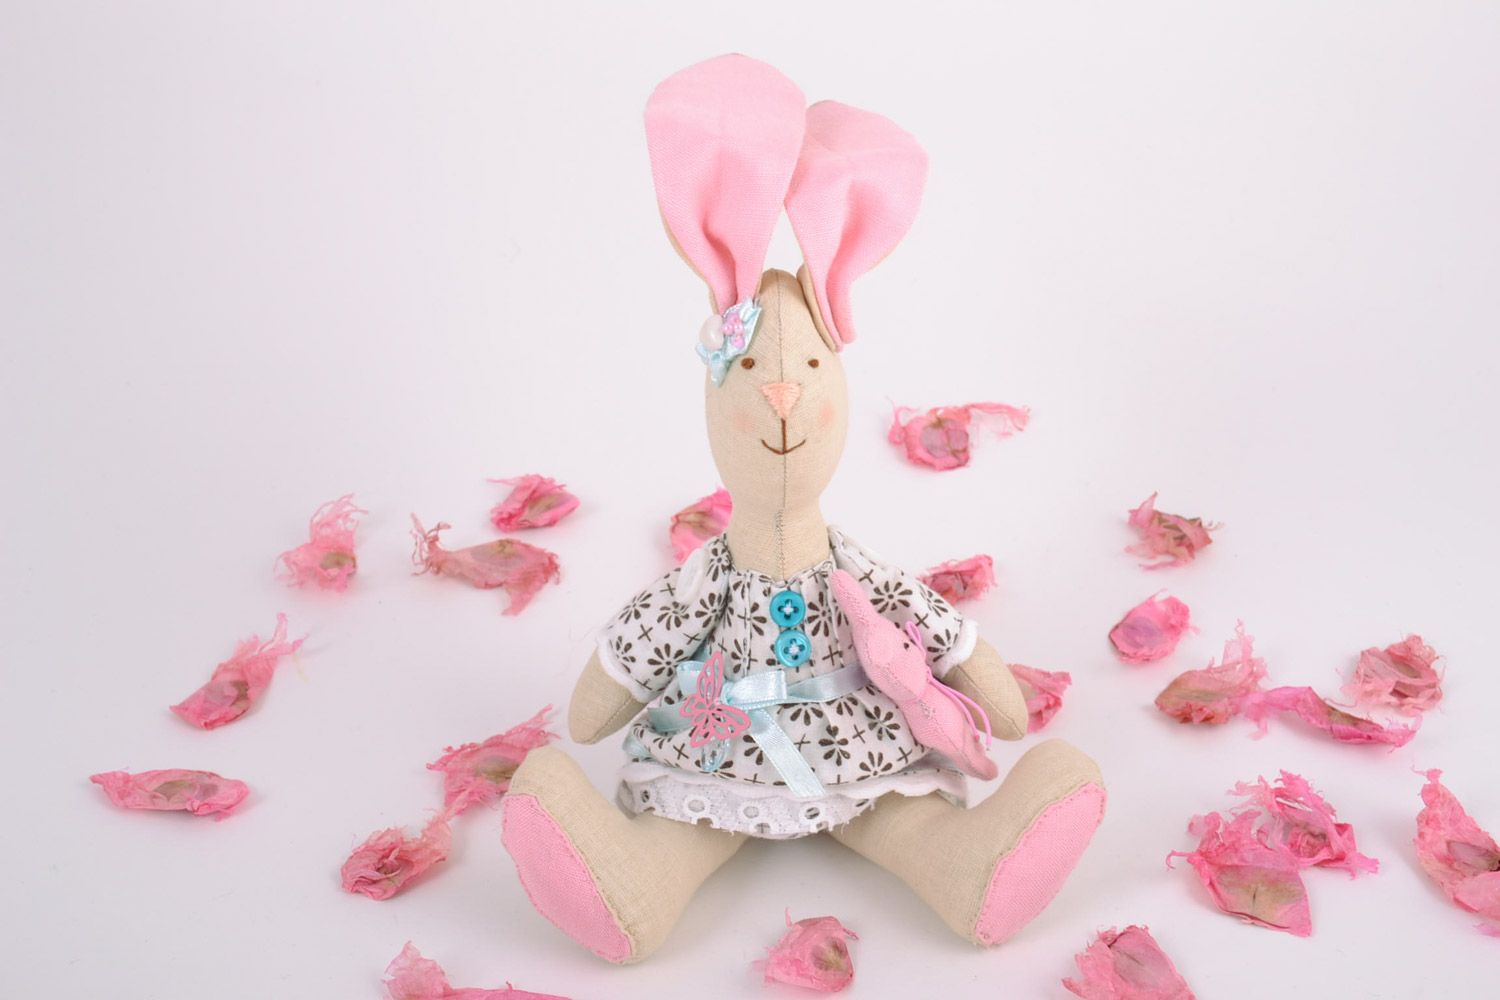 Textil Kuscheltier Hase rosa im Kleid aus Baumwolle schön für Mädchen handmade foto 1